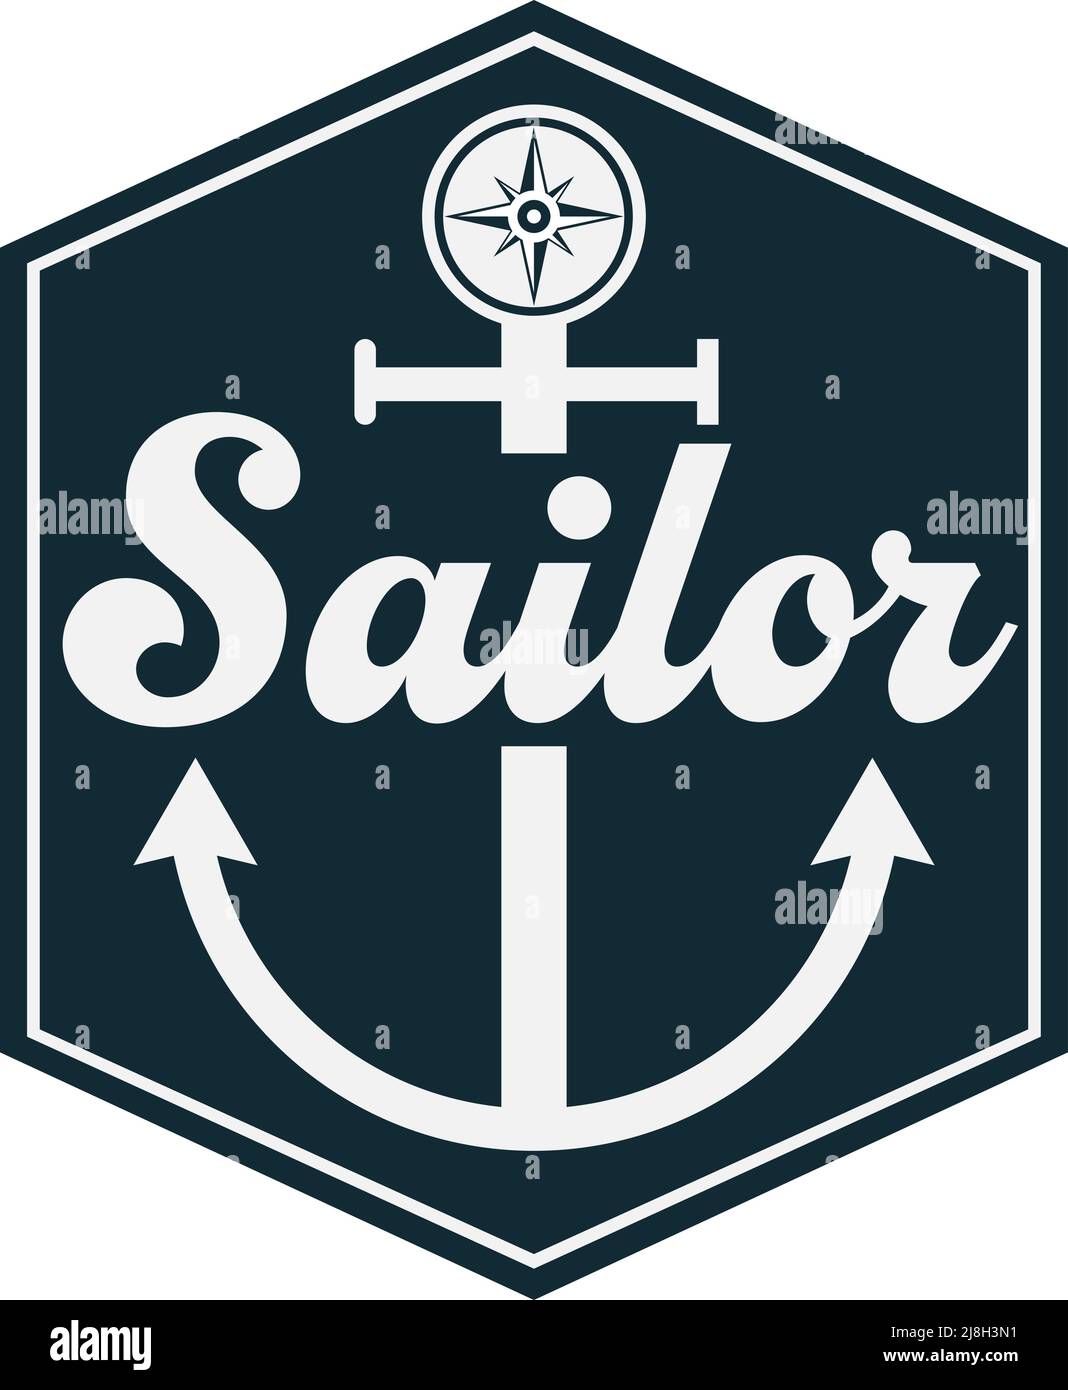 Abzeichen oder Logo mit Anker und Wort SEEMANN, Vektorgrafik Stock Vektor